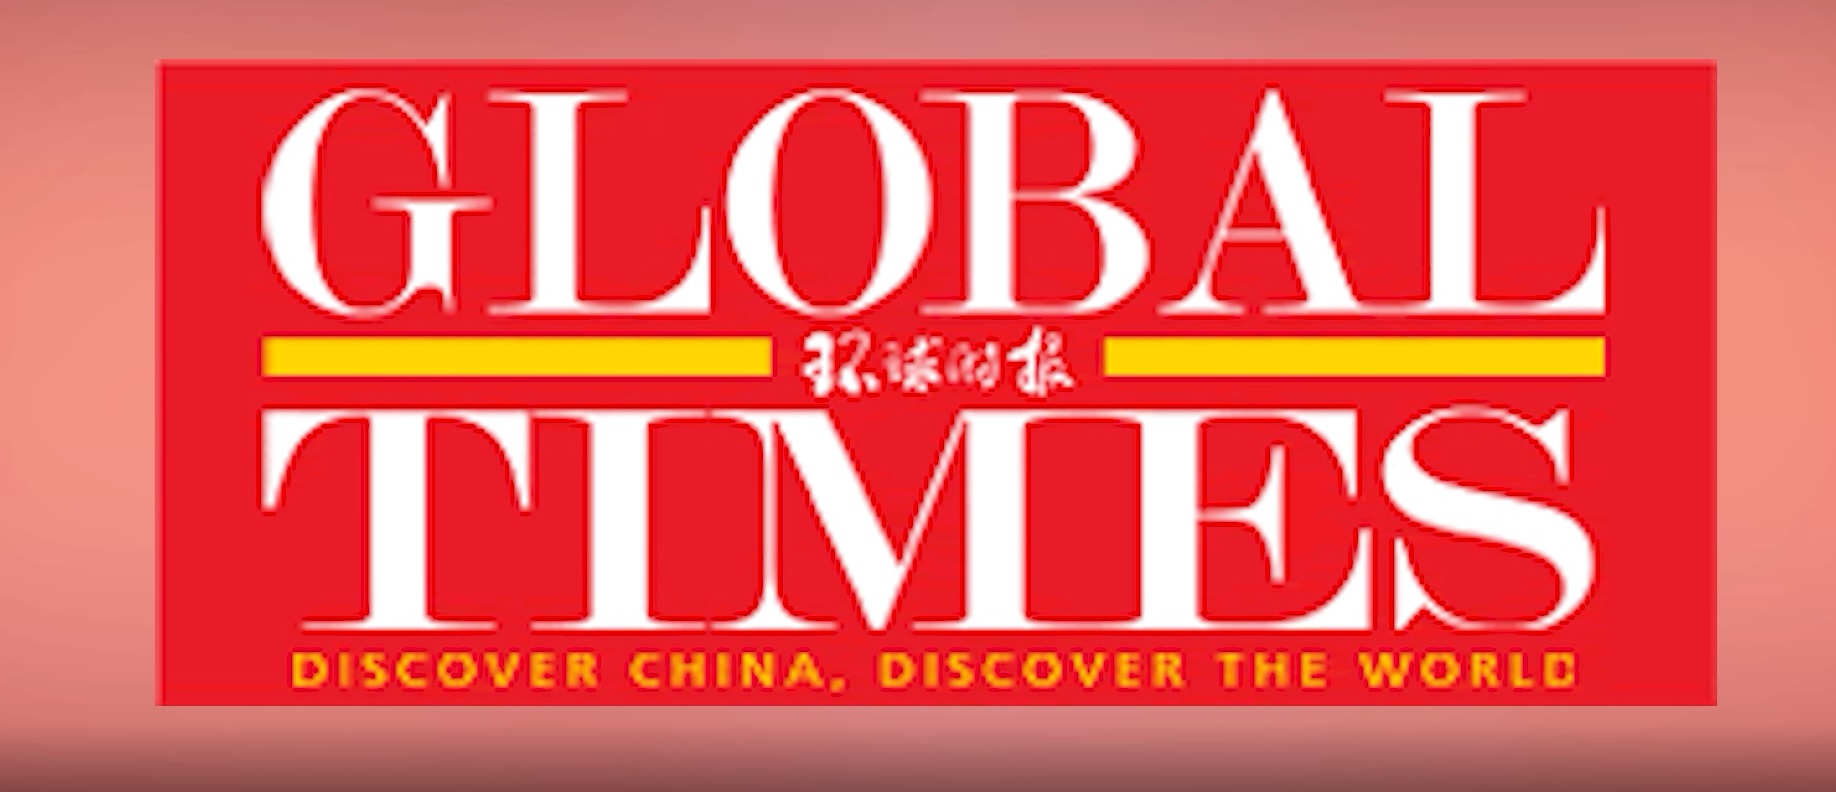 नेपाल–चीन सीमा विवादको झुटो खबर फैलिनुमा नेपाली कांग्रेस र भारतीय भिडिया जिम्मेवारः चीन